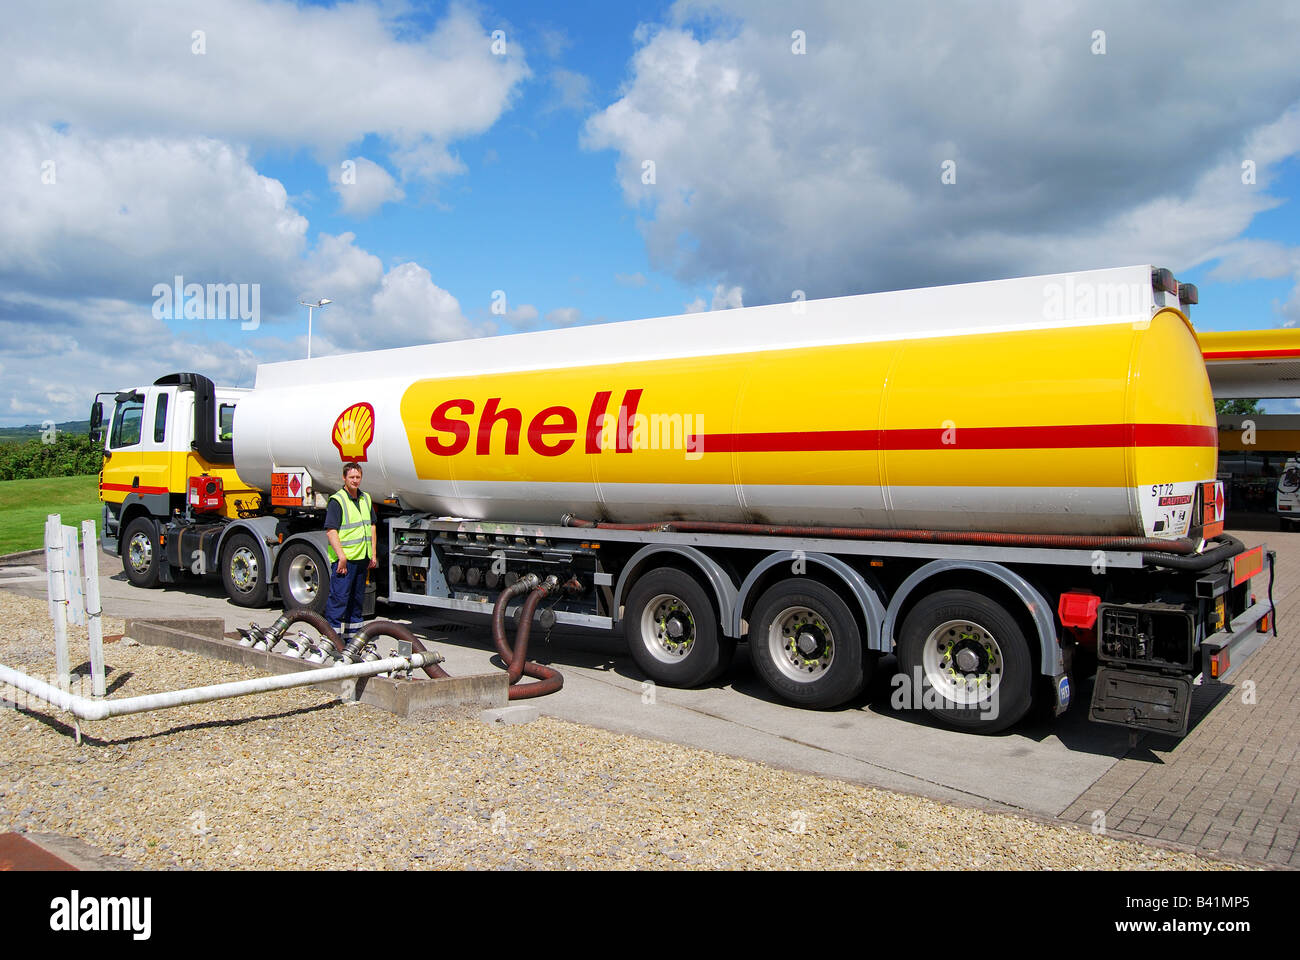 Shell Tanker füllen von Tanks mit Tankstelle, Cardiff, Wales, Vereinigtes Königreich Stockfoto